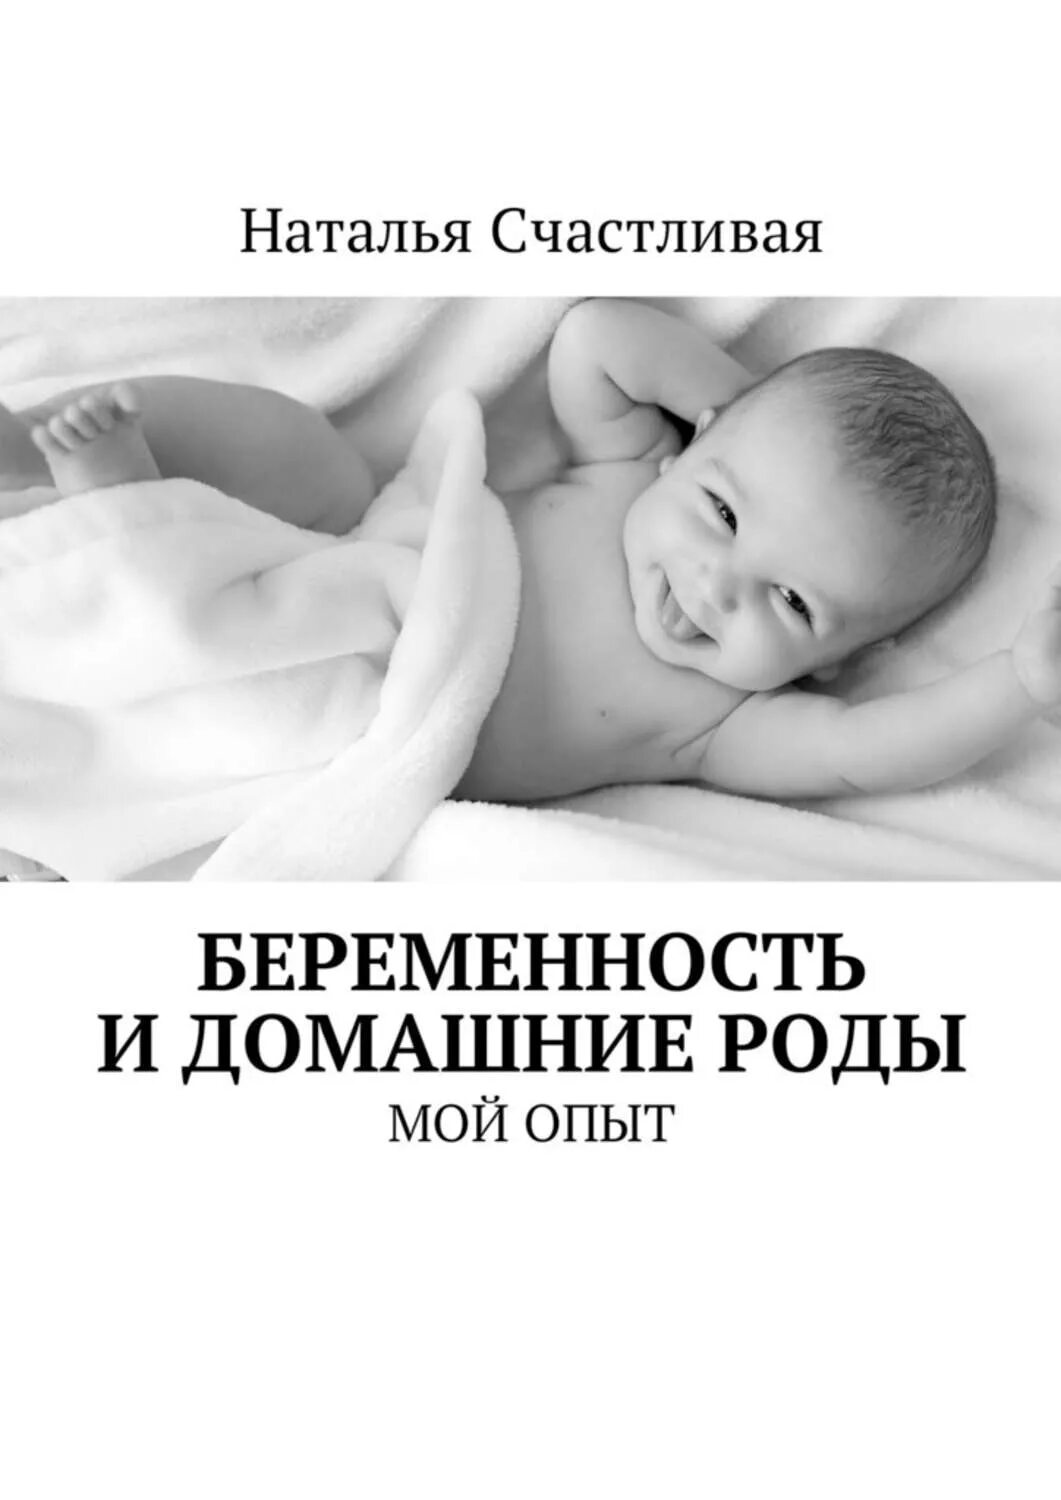 Книга про беременность читать. Книги по домашним родам. Естественные роды книга. Книга про домашние роды. Книги про беременность.